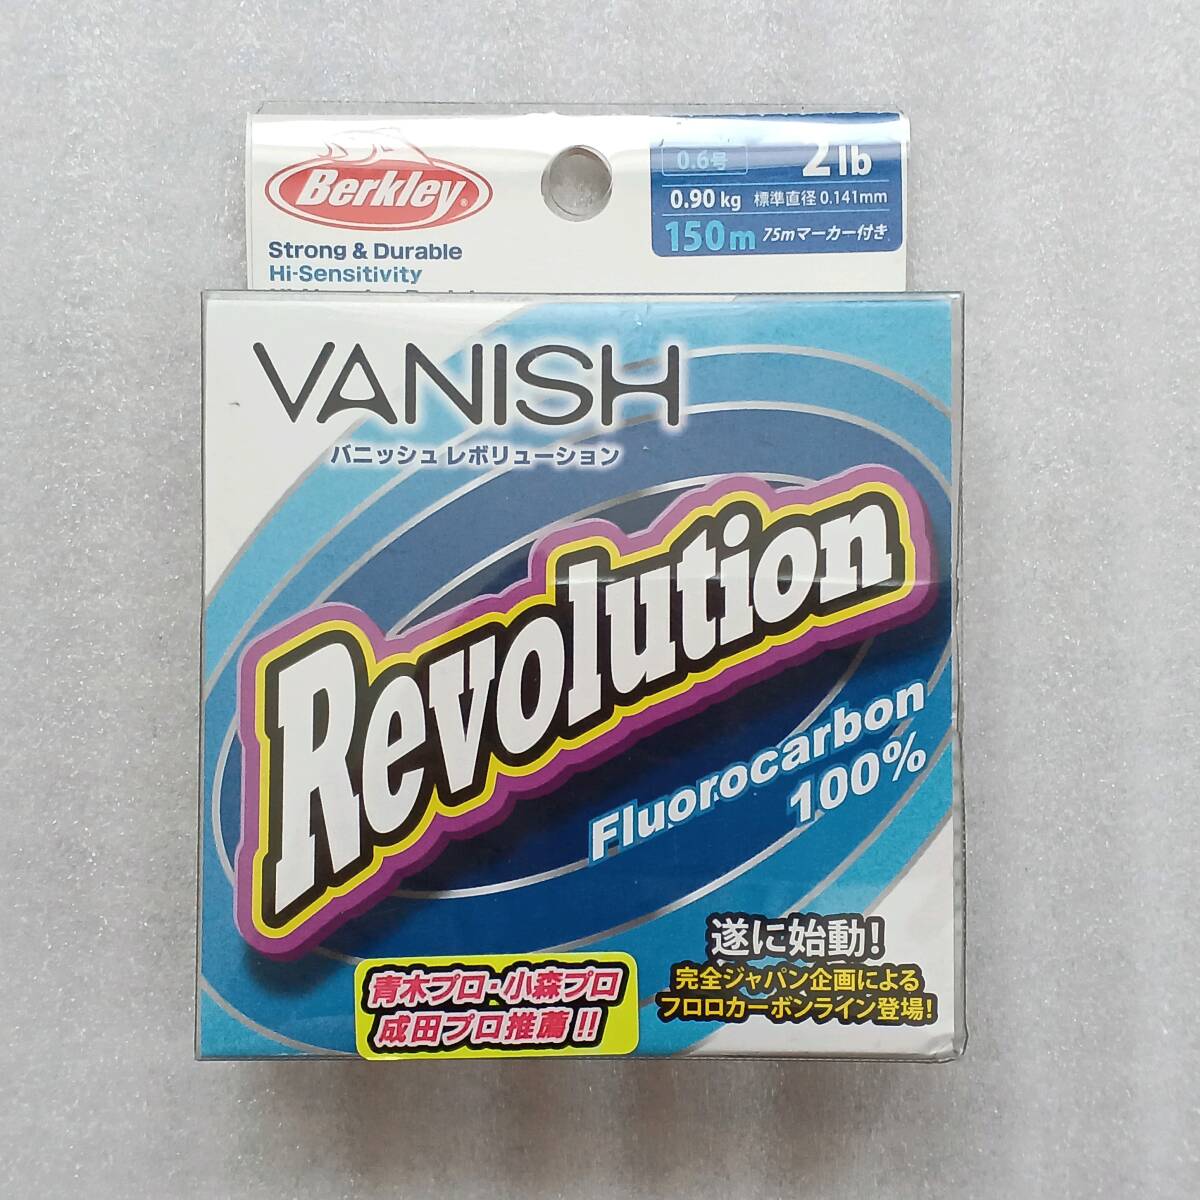  новый товар Berkley Vanish Revolution 0.6 номер 2 фунт 150m Berkley VANISH Revolution 2lbfroro карбоновый линия 